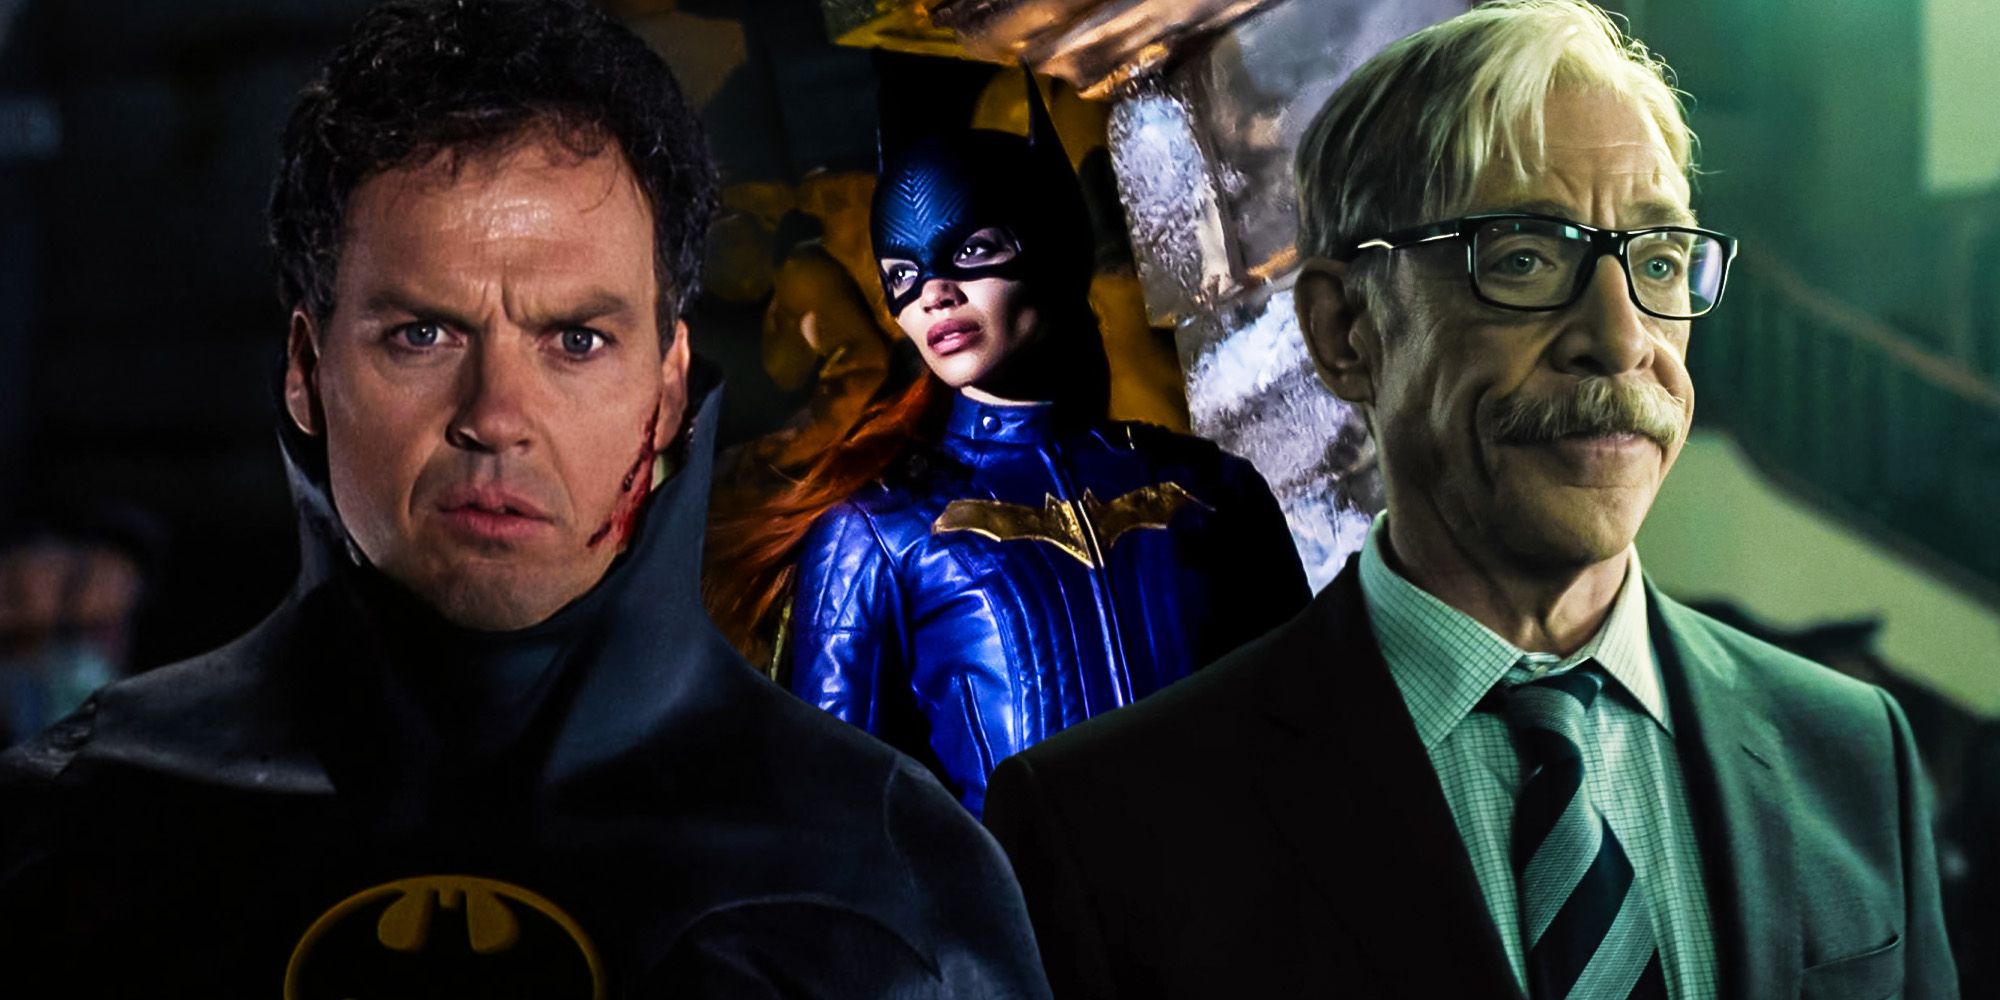 Michael Keaton as Batman, Leslie Grace as Batgirl, and JK Simmons as Gordon